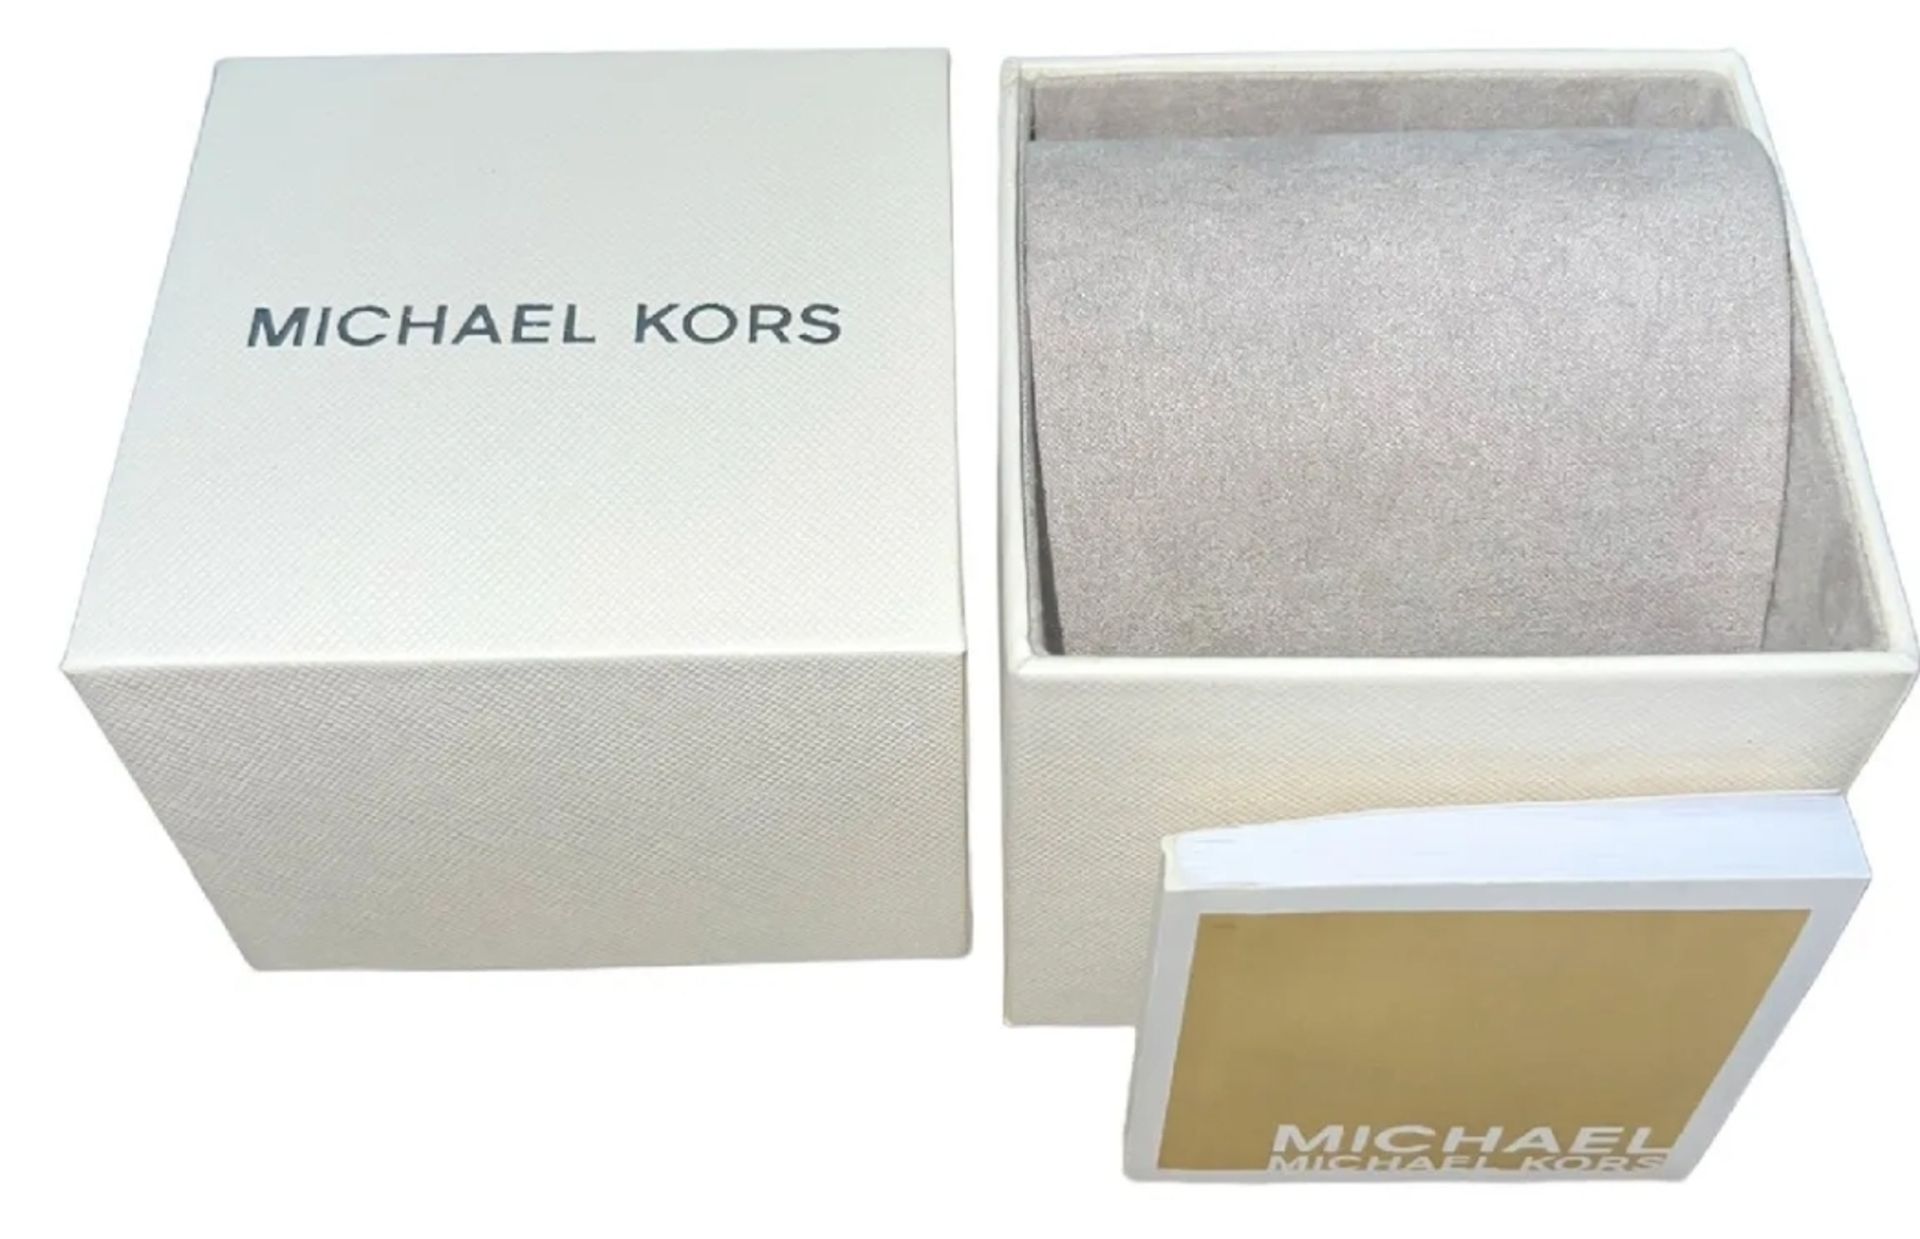 Michael Kors MK3478 Ladies Slim Runway Watch Gold Bracelet Black Dial - Image 9 of 9